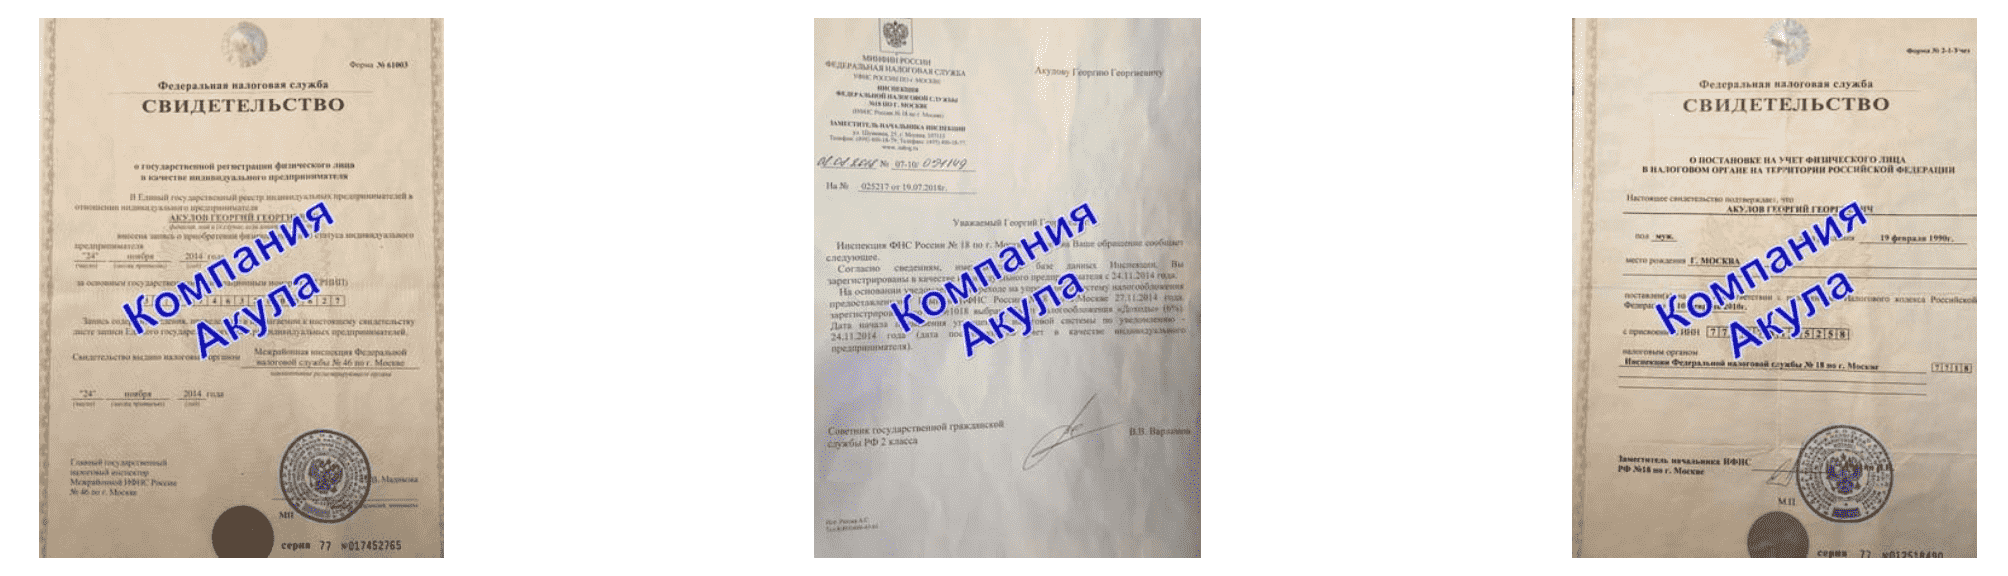 Документы компании по раздаче листовок Новосибирск